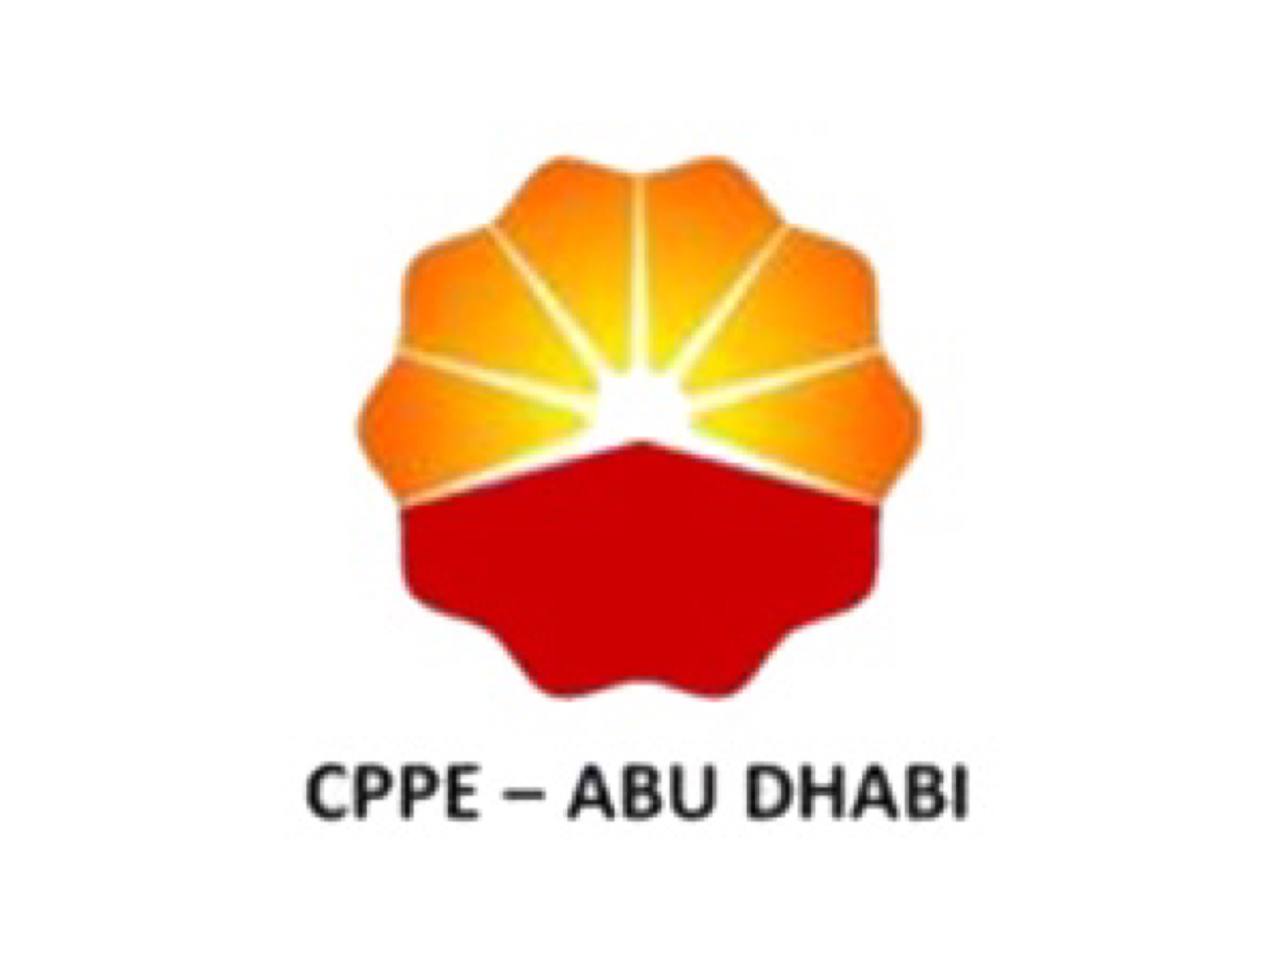 شركة هندسة أنابيب البترول الصينية أبوظبي الامارات العربية المتحدة     شركة هندسة أنابيب البترول الصينية أبوظبي تعلن عن توفر عدد من الوظائف الحديثة للمواطنين والمقيمين في امارة ابوظبي الامارات العربية المتحدة .